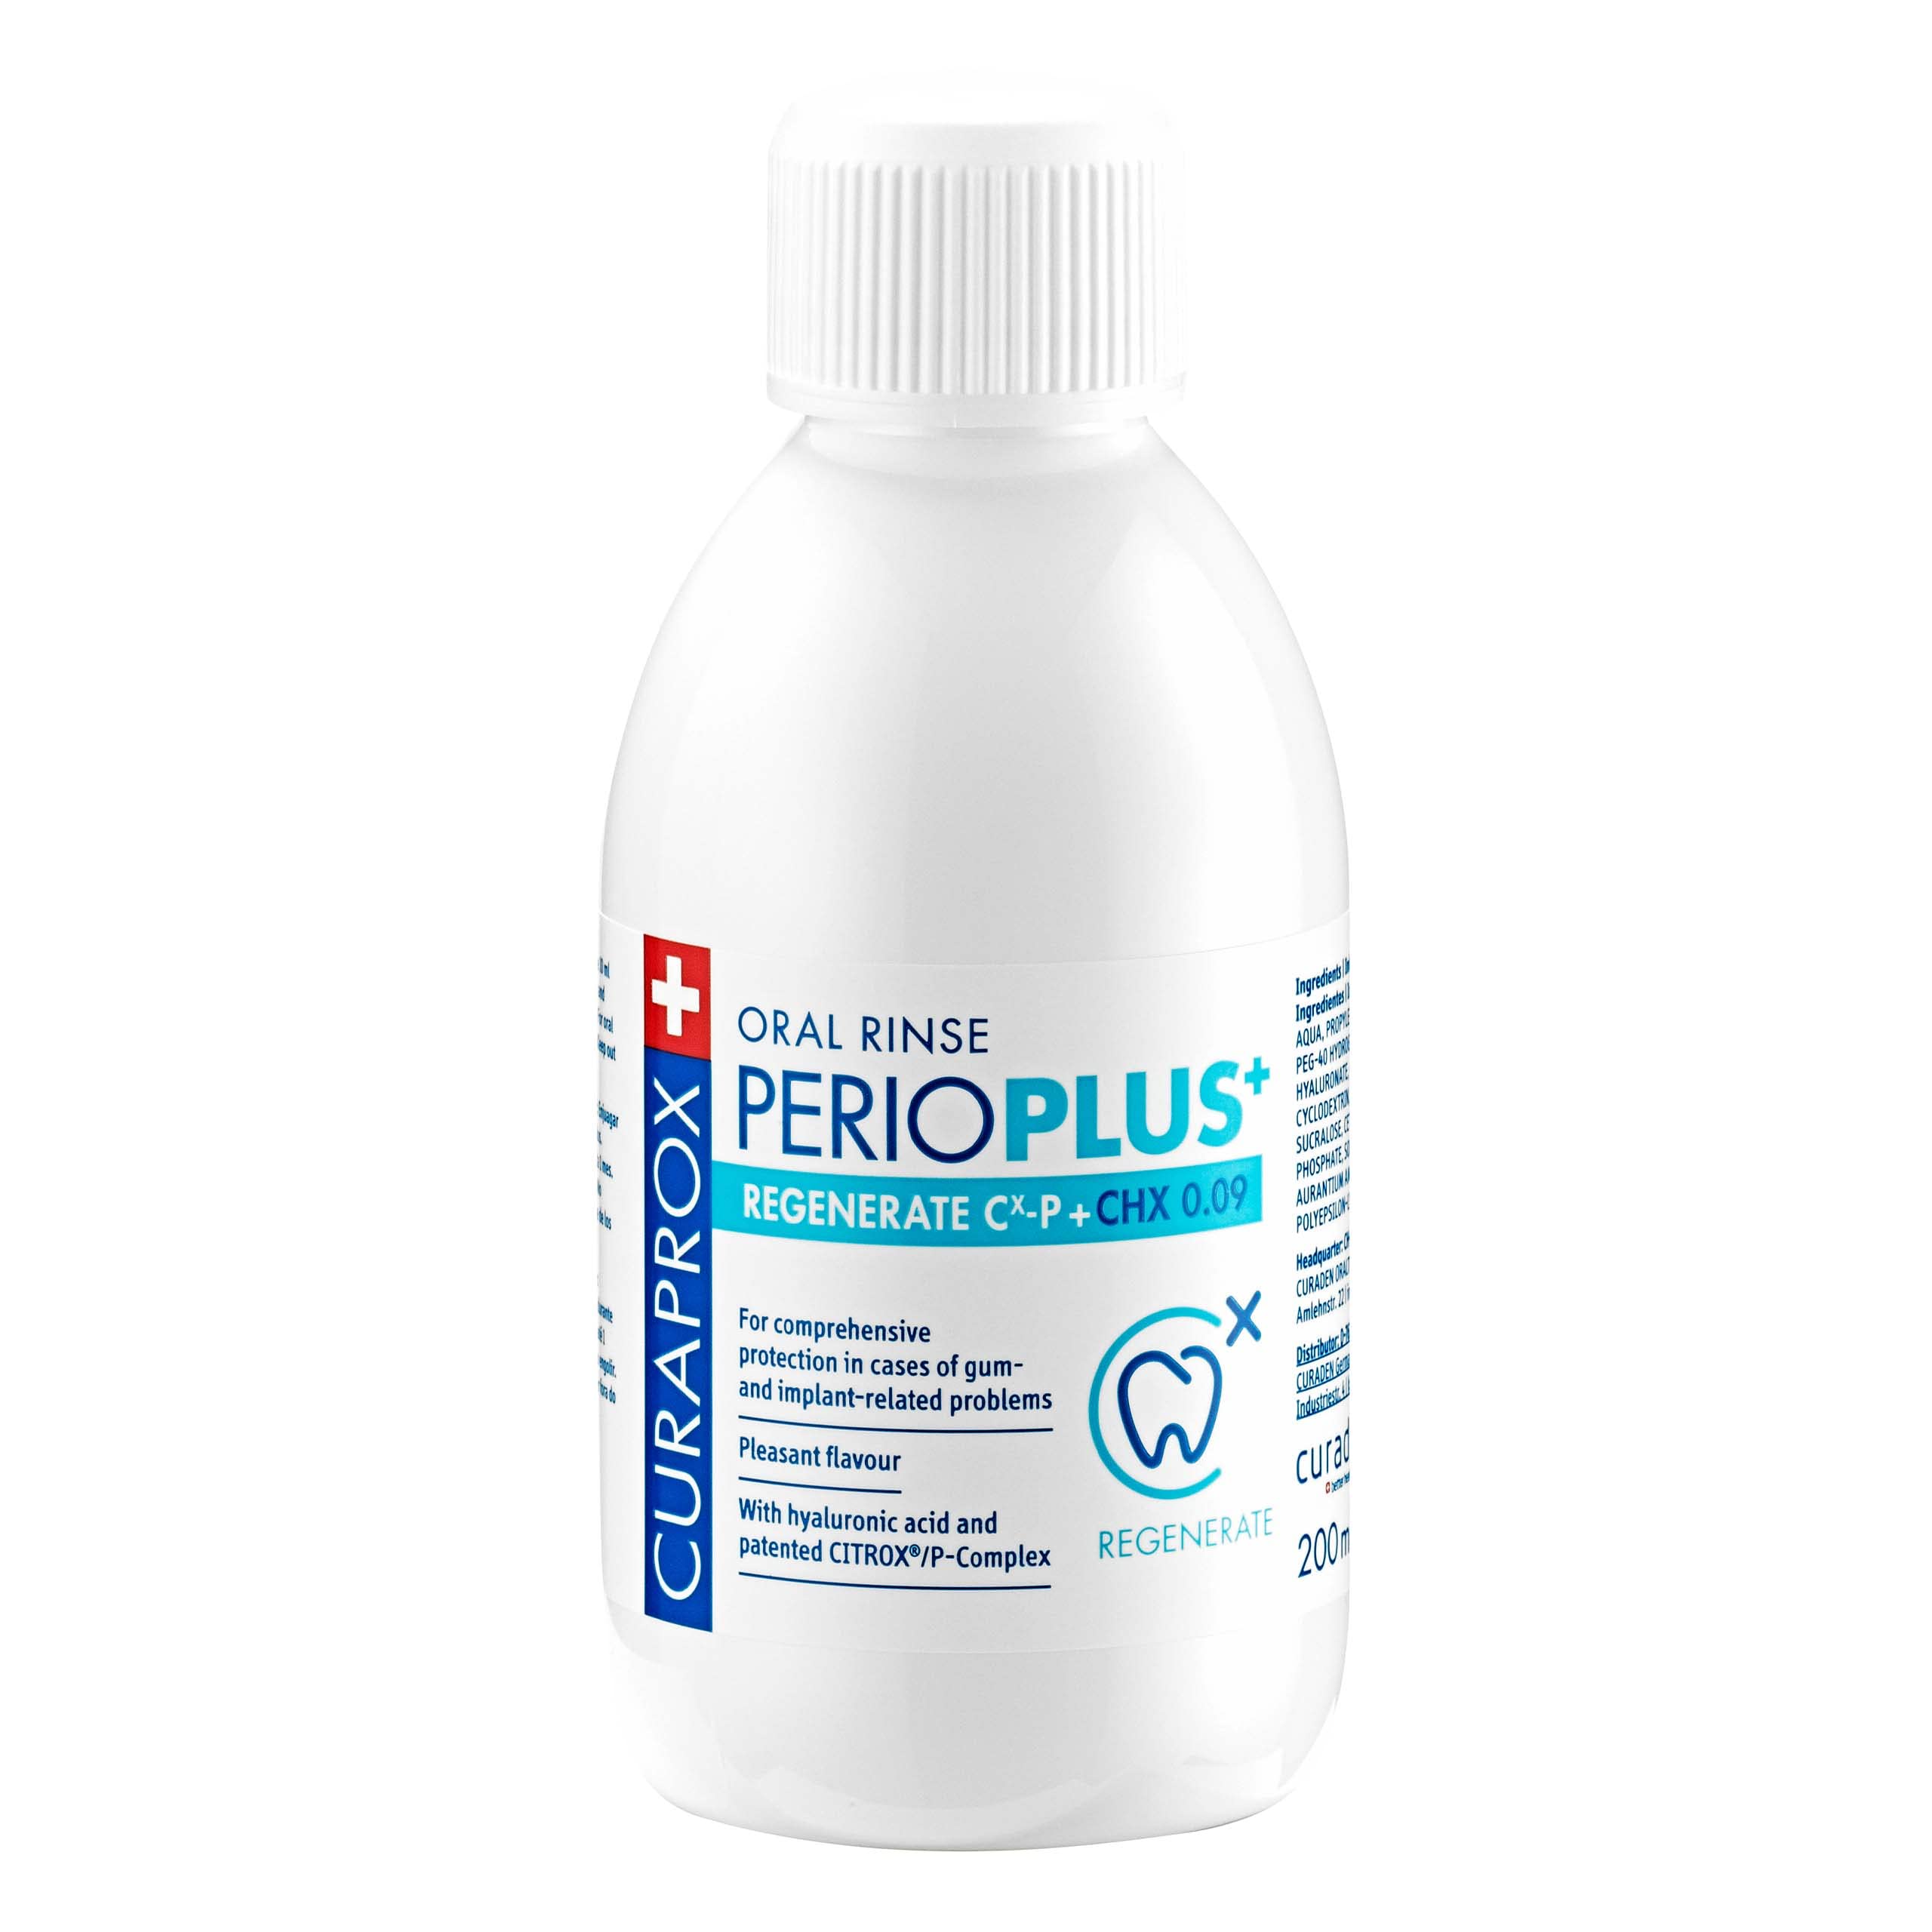 Curaprox PerioPlus+ Regenerate Mouthwash, 200ml - Antiseptic Antibacterial mouthwash for Gum Disease & Enamel Repair.